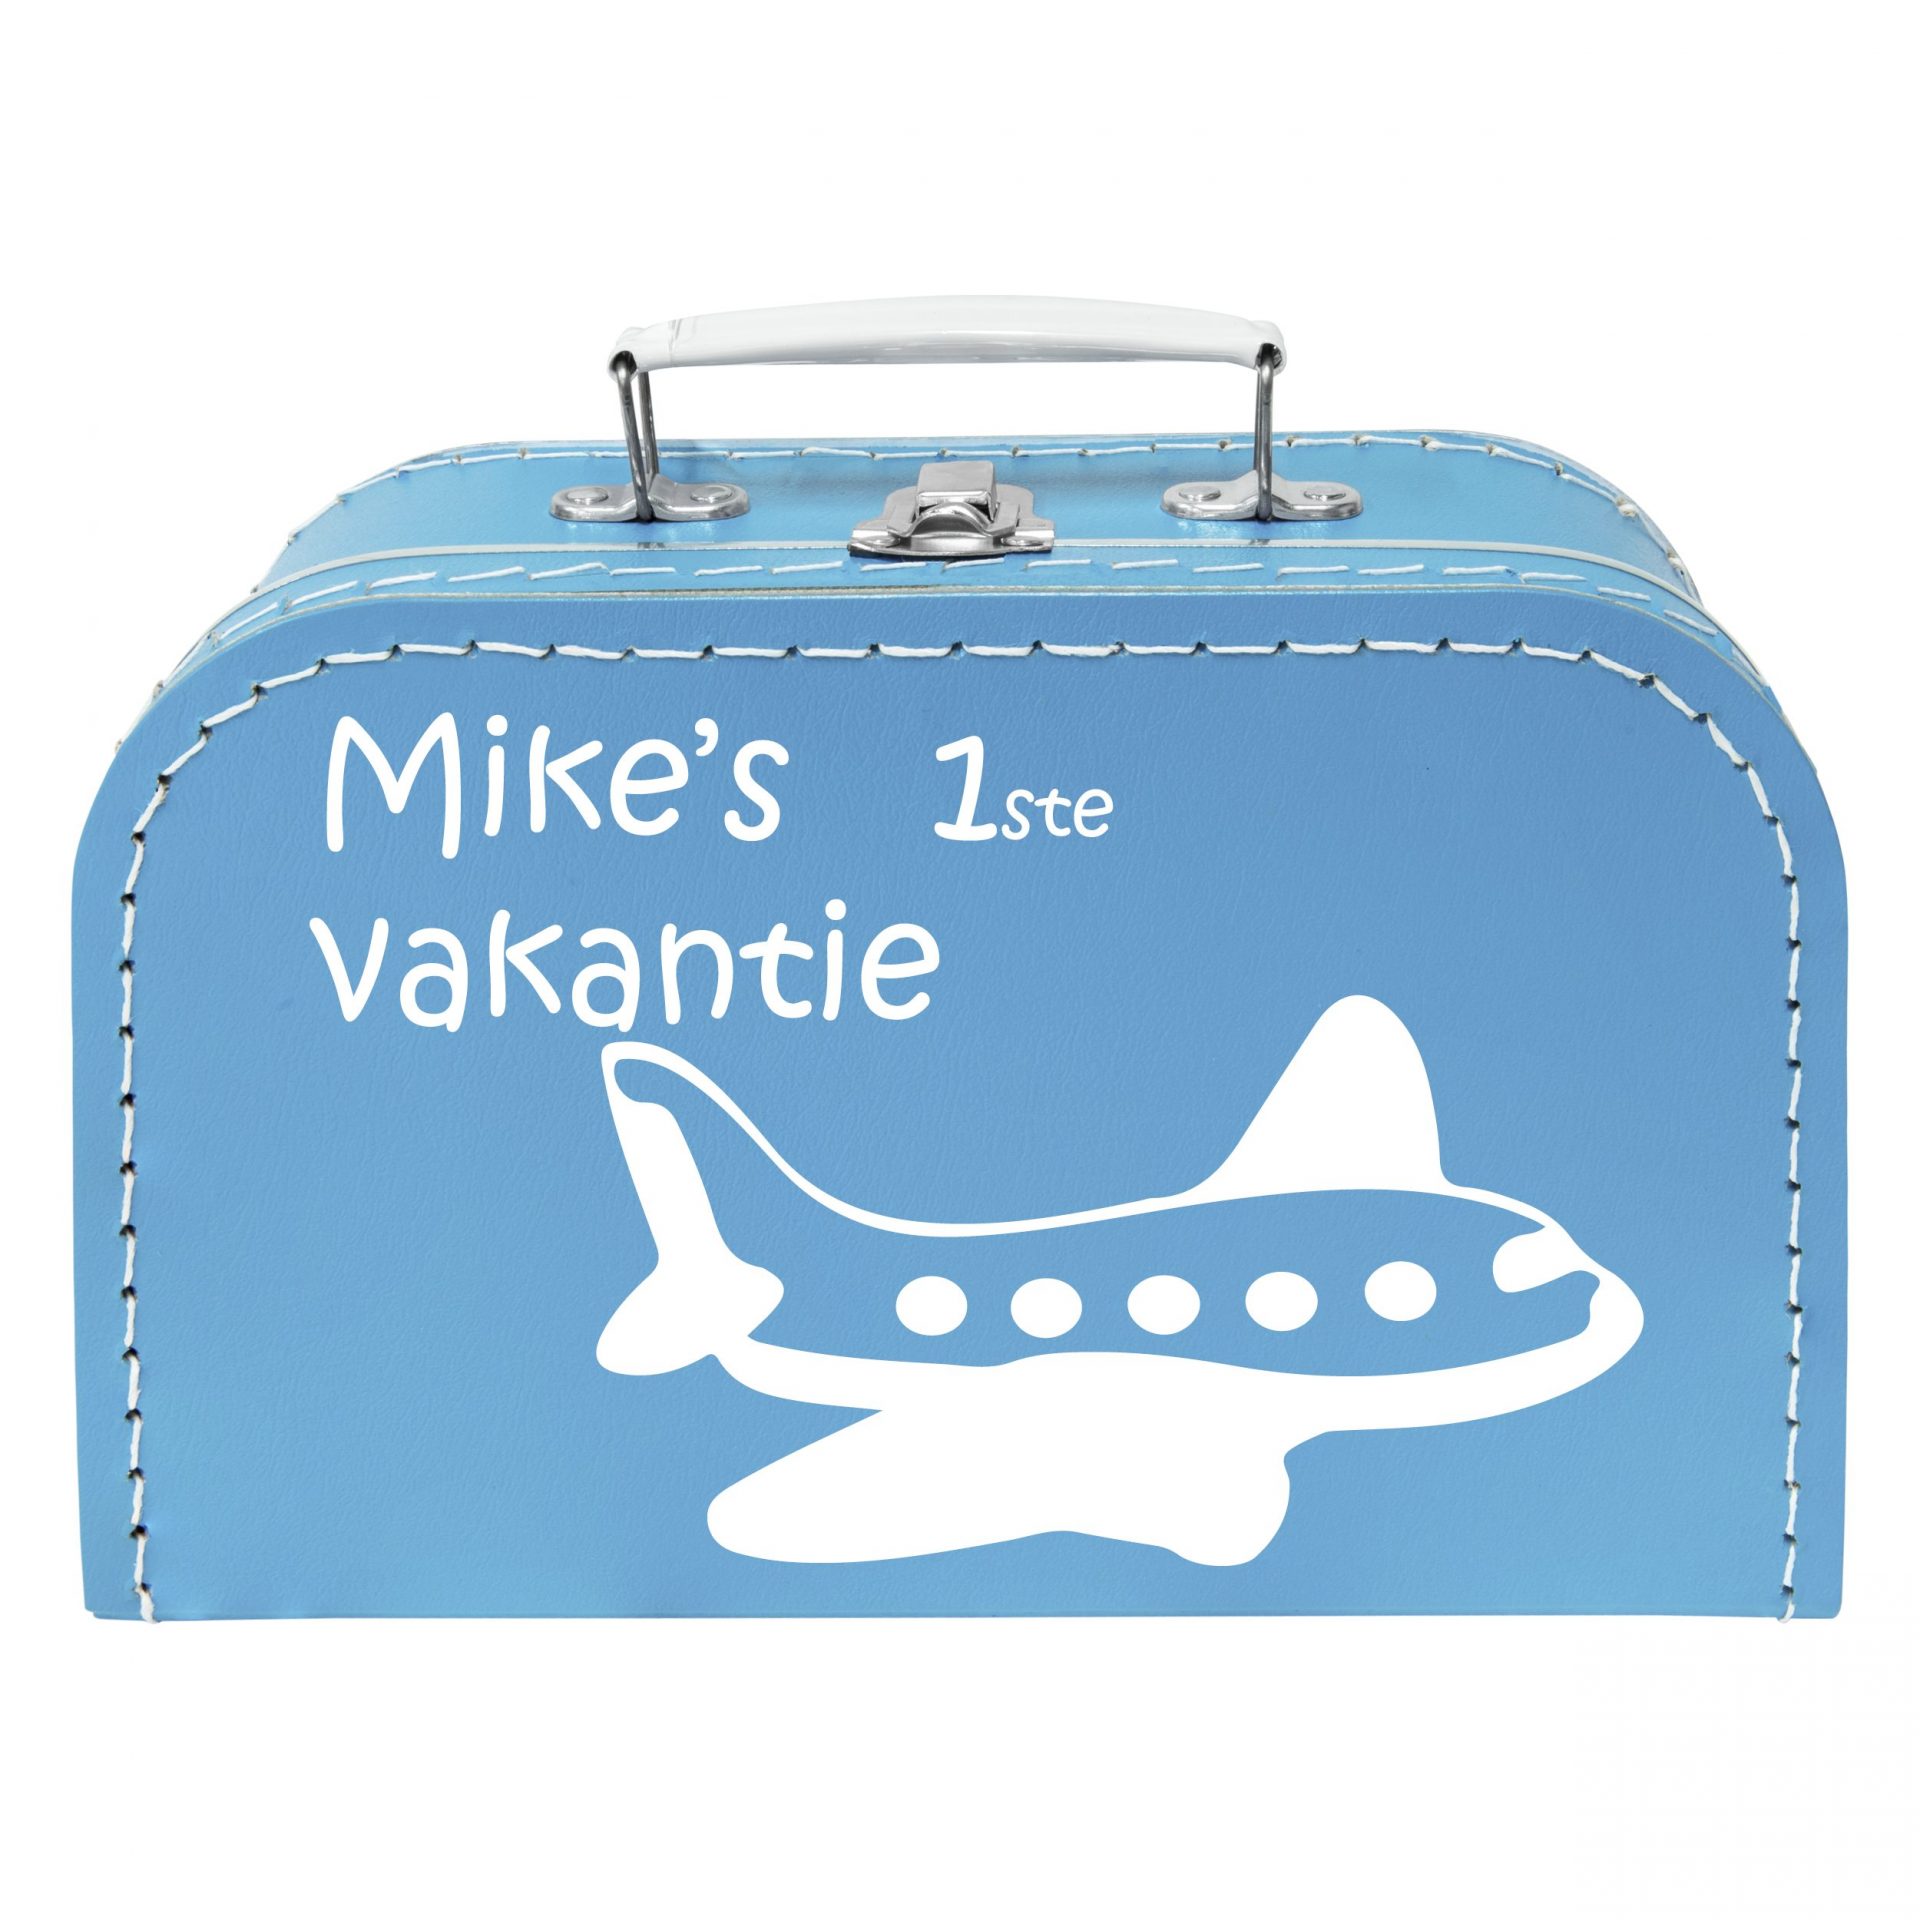 Foto overzien importeren Koffertje met Naam Vliegtuig | StyleKado